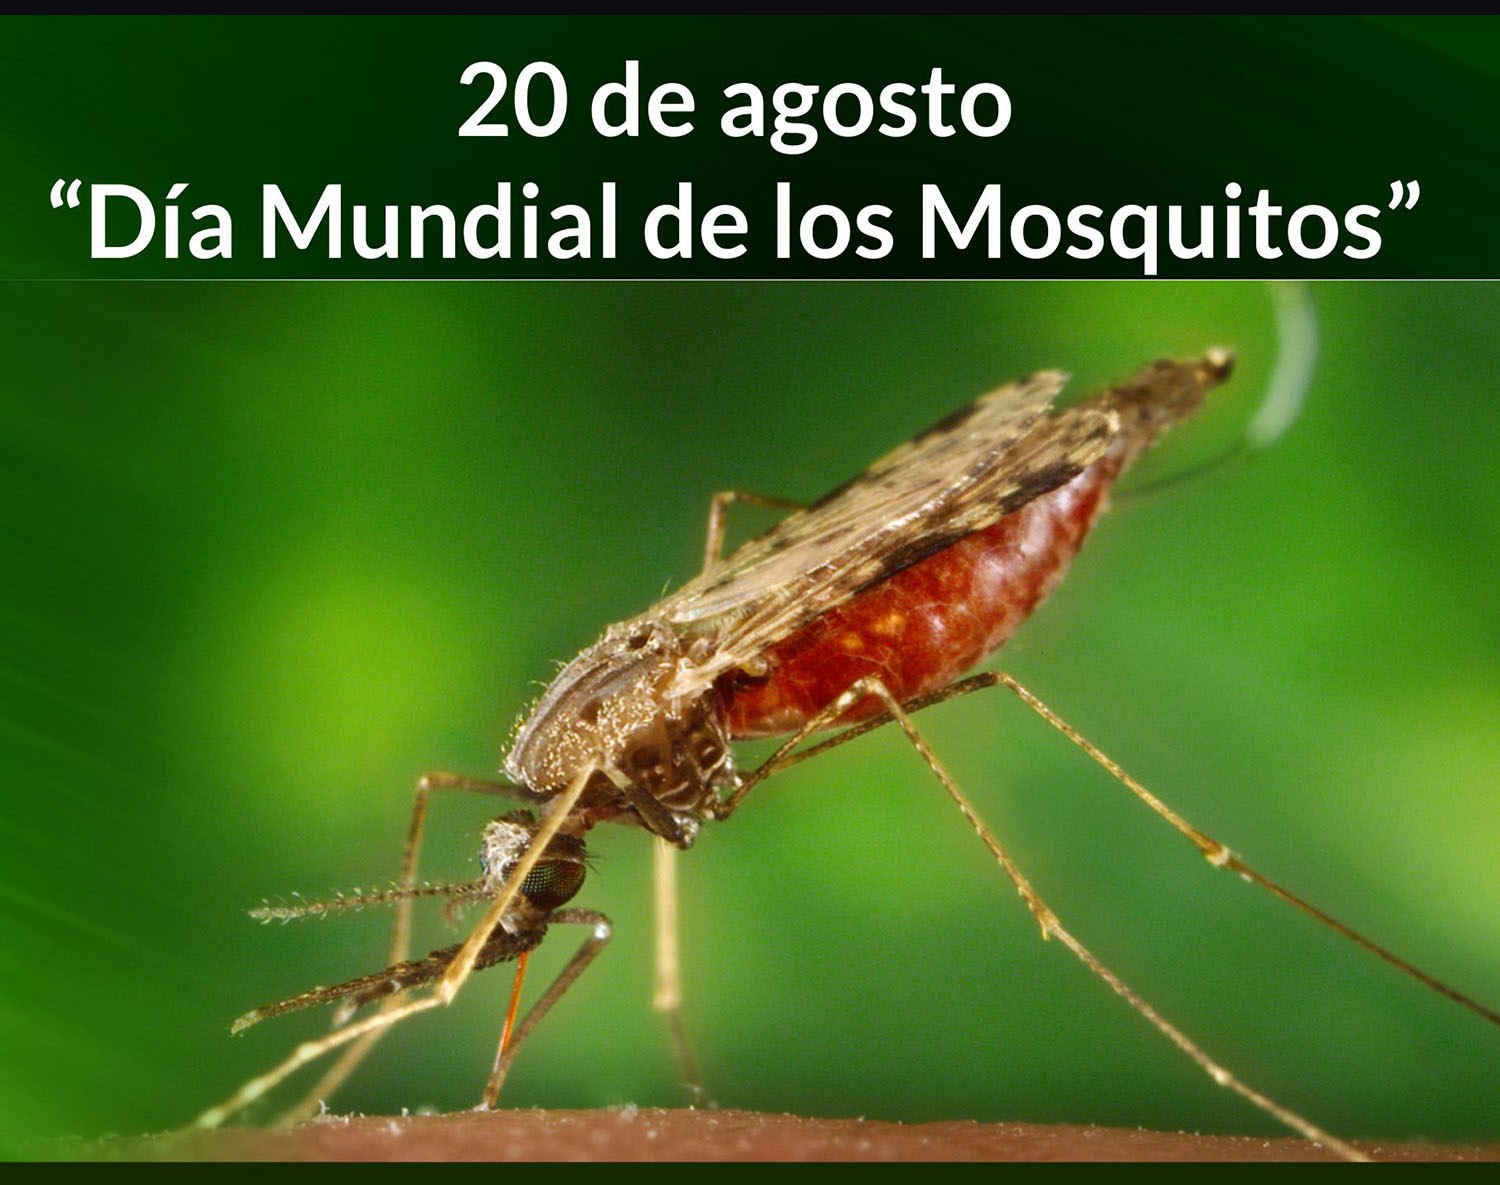 20 de agosto “Día Mundial de los Mosquitos”